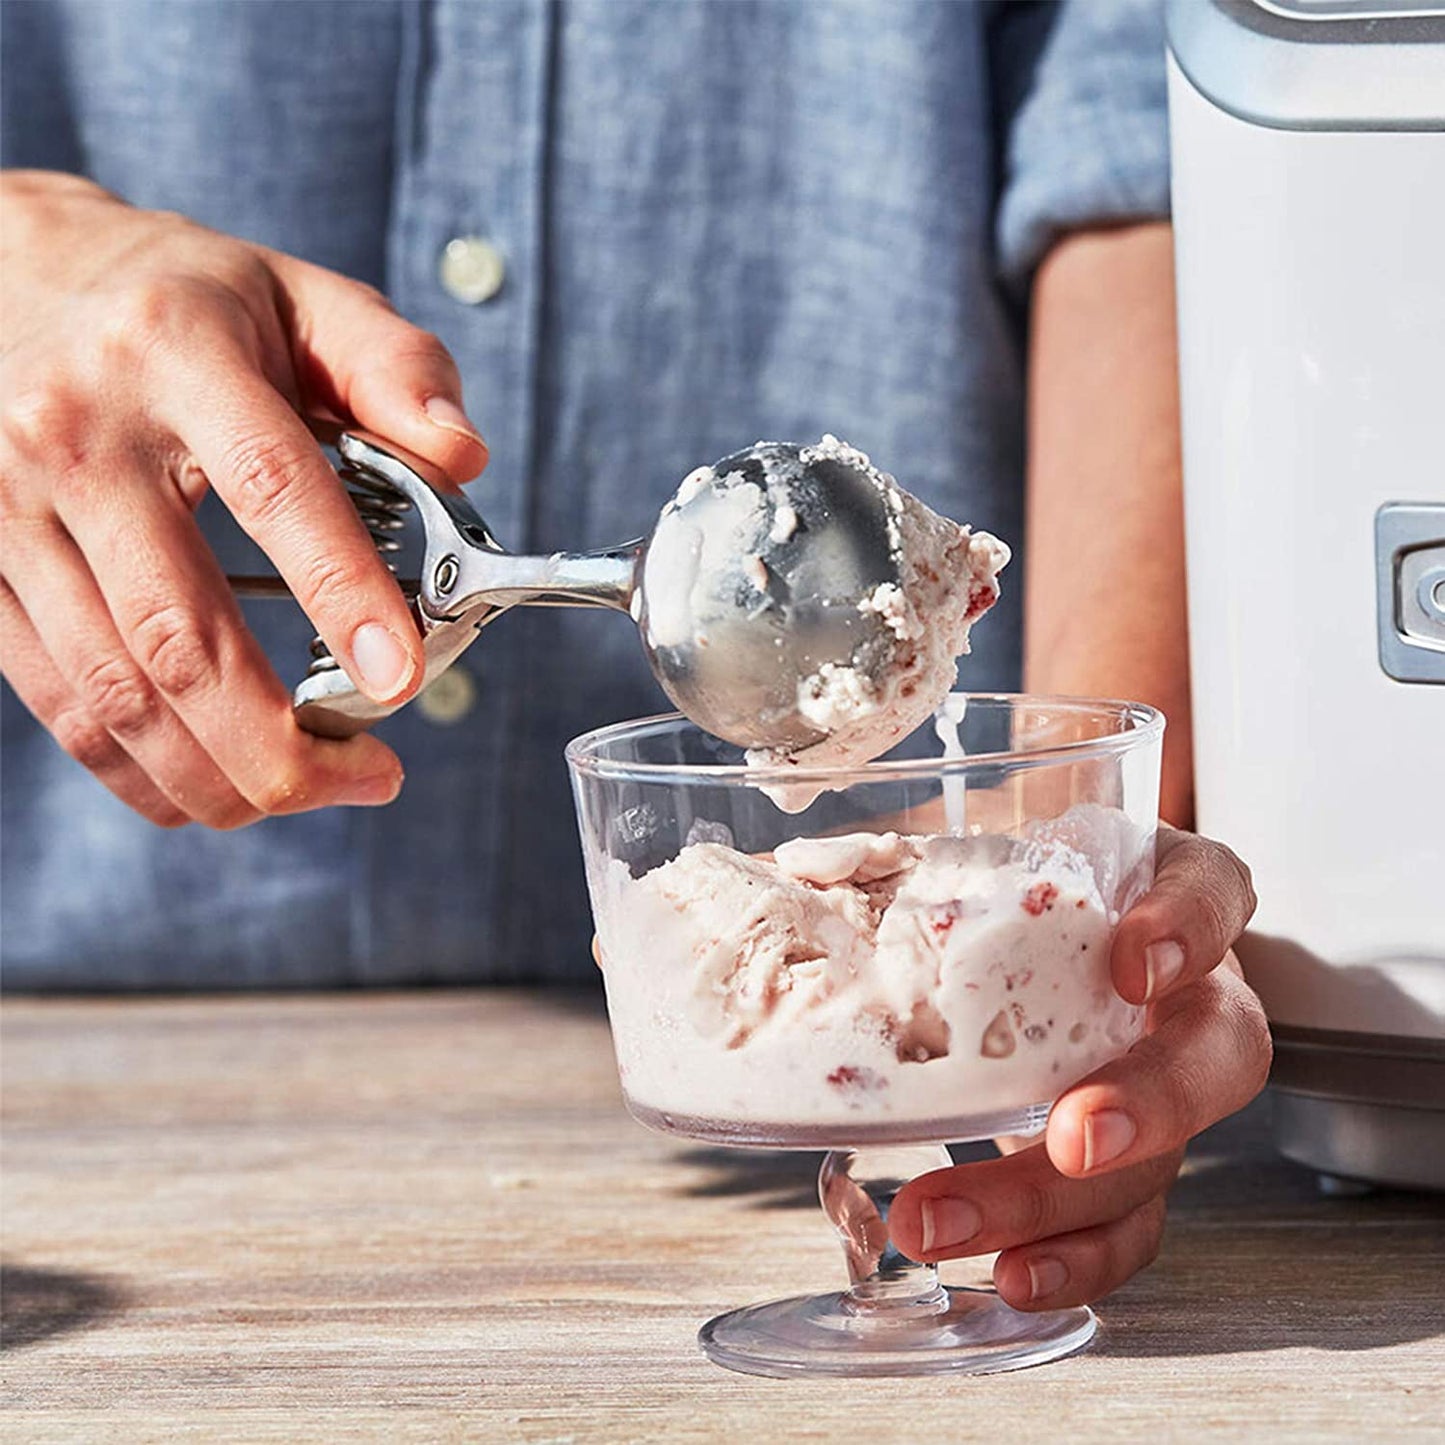 de Buyer - Ice cream scoop - stainless steel